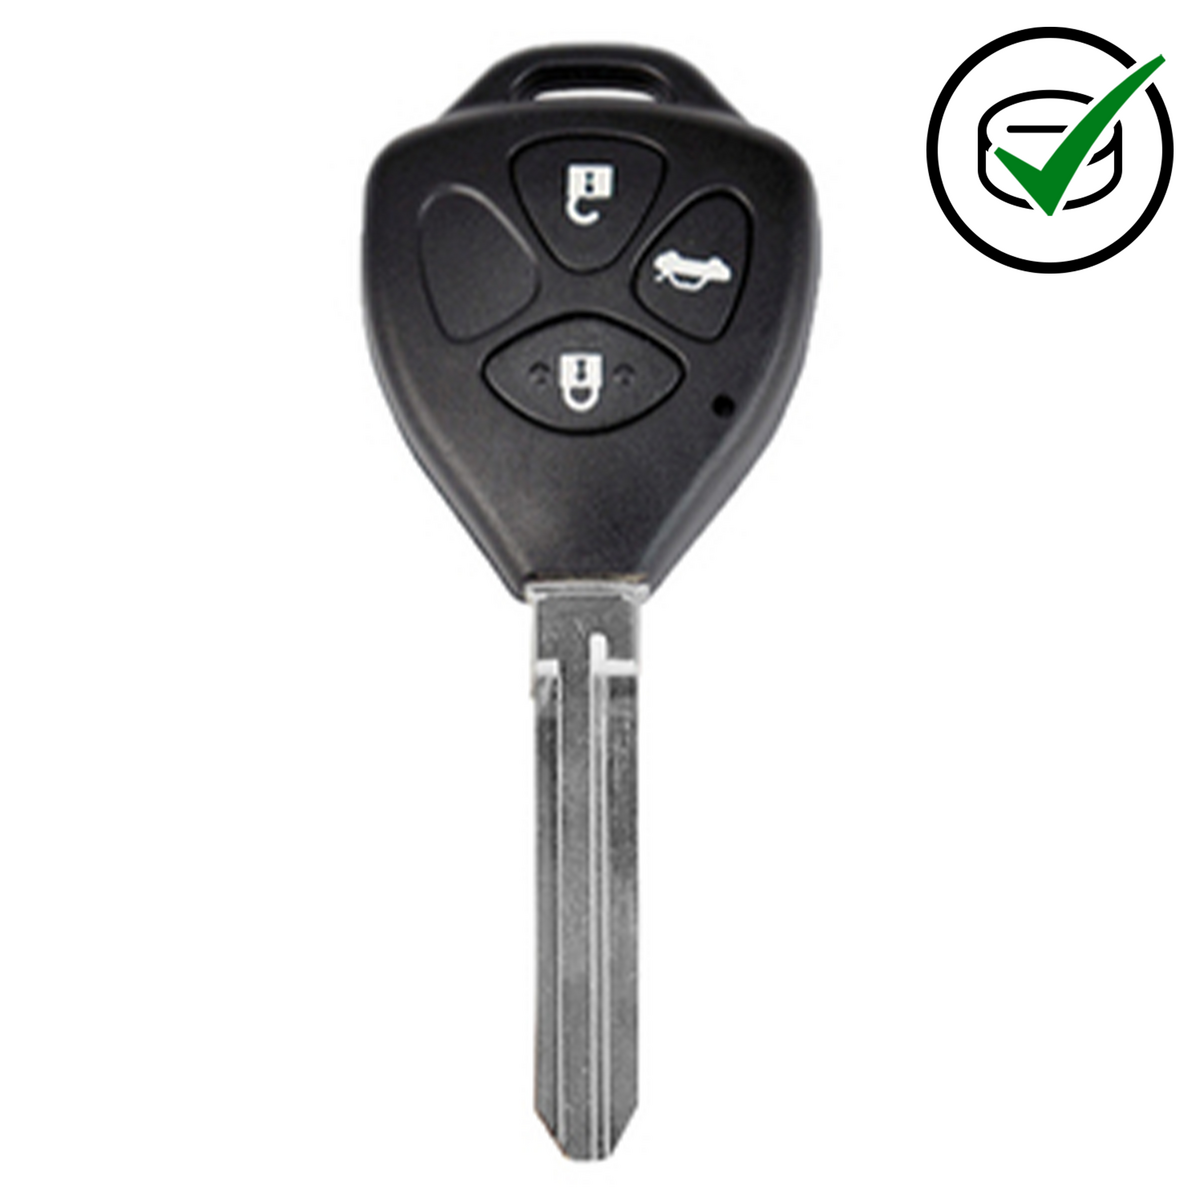 KeyDIY 3 Button Key to suit B05-3